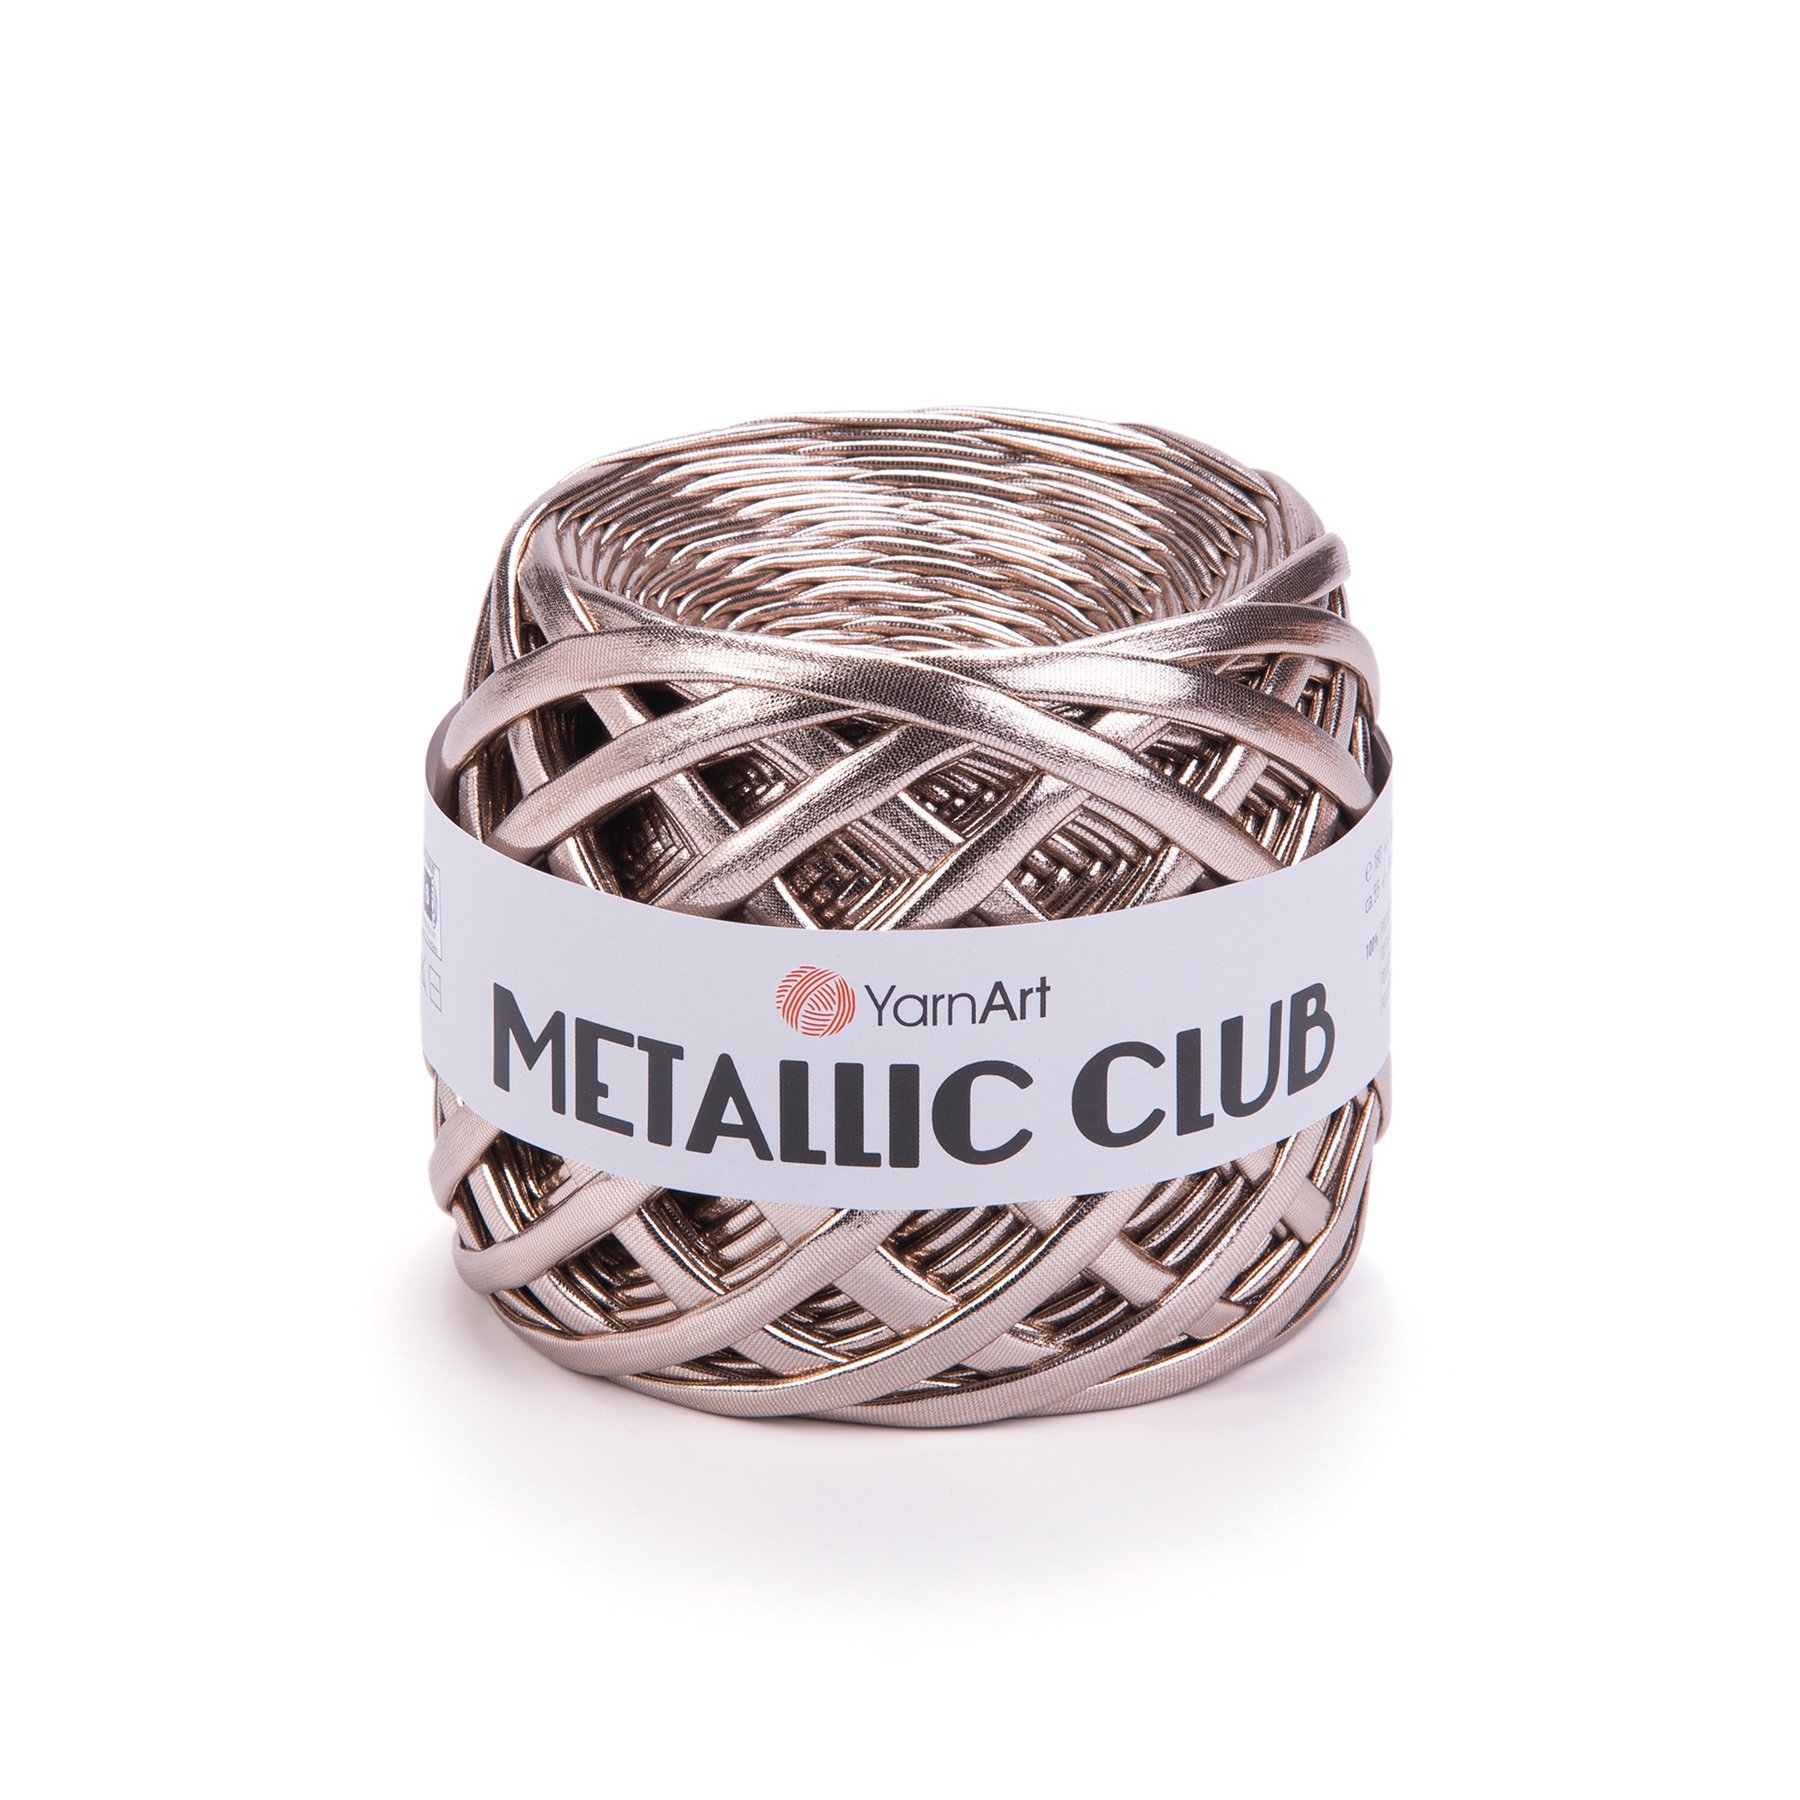 Metallic Club 8103